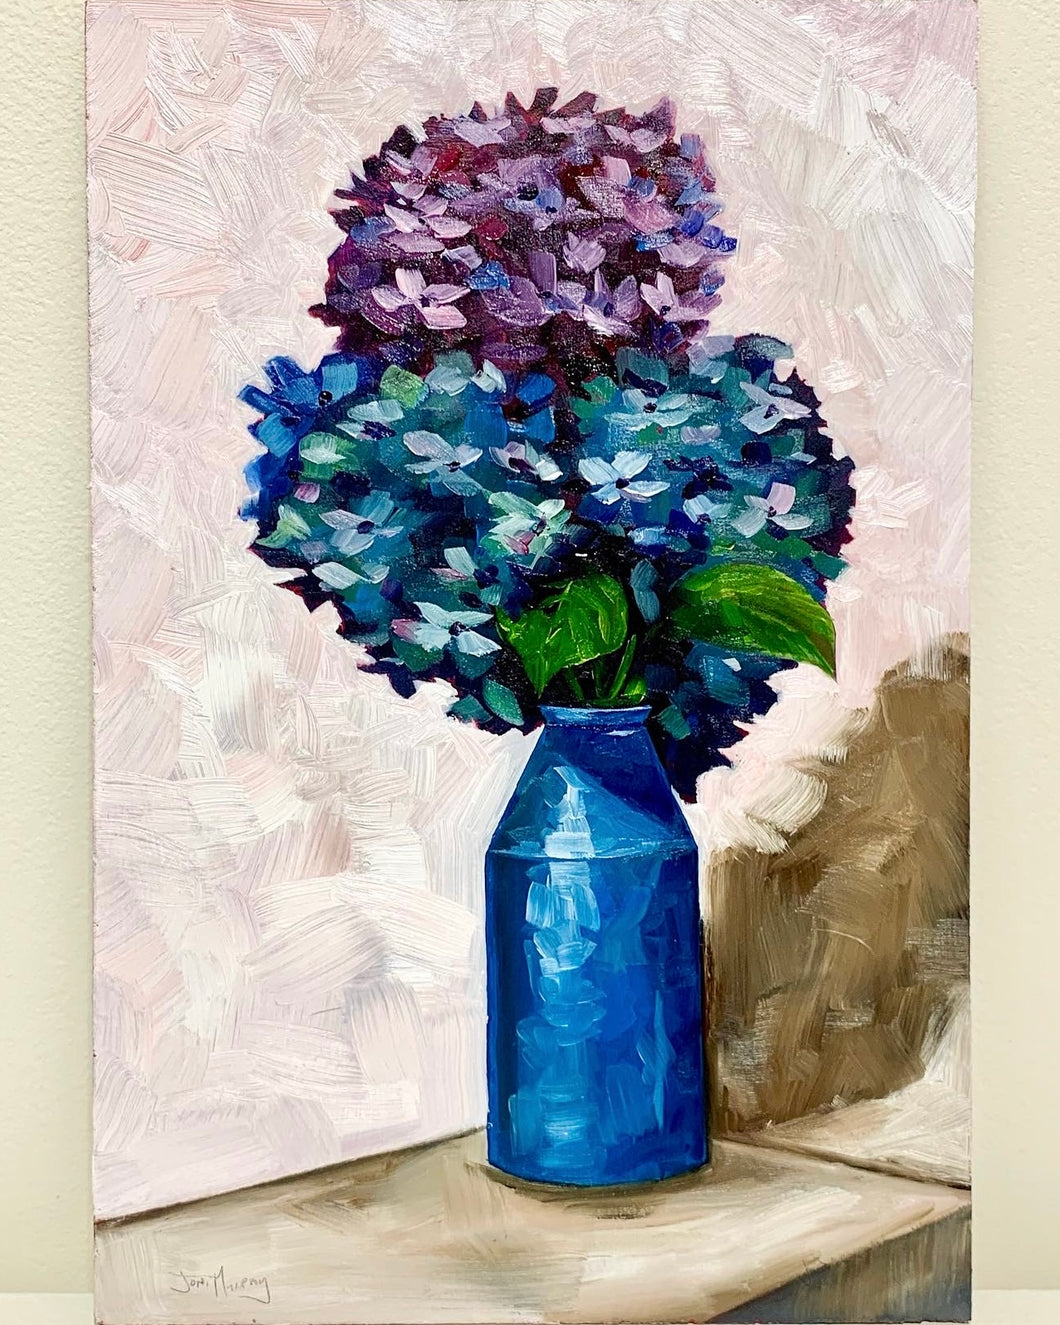 Hydrangeas in a blue bottle